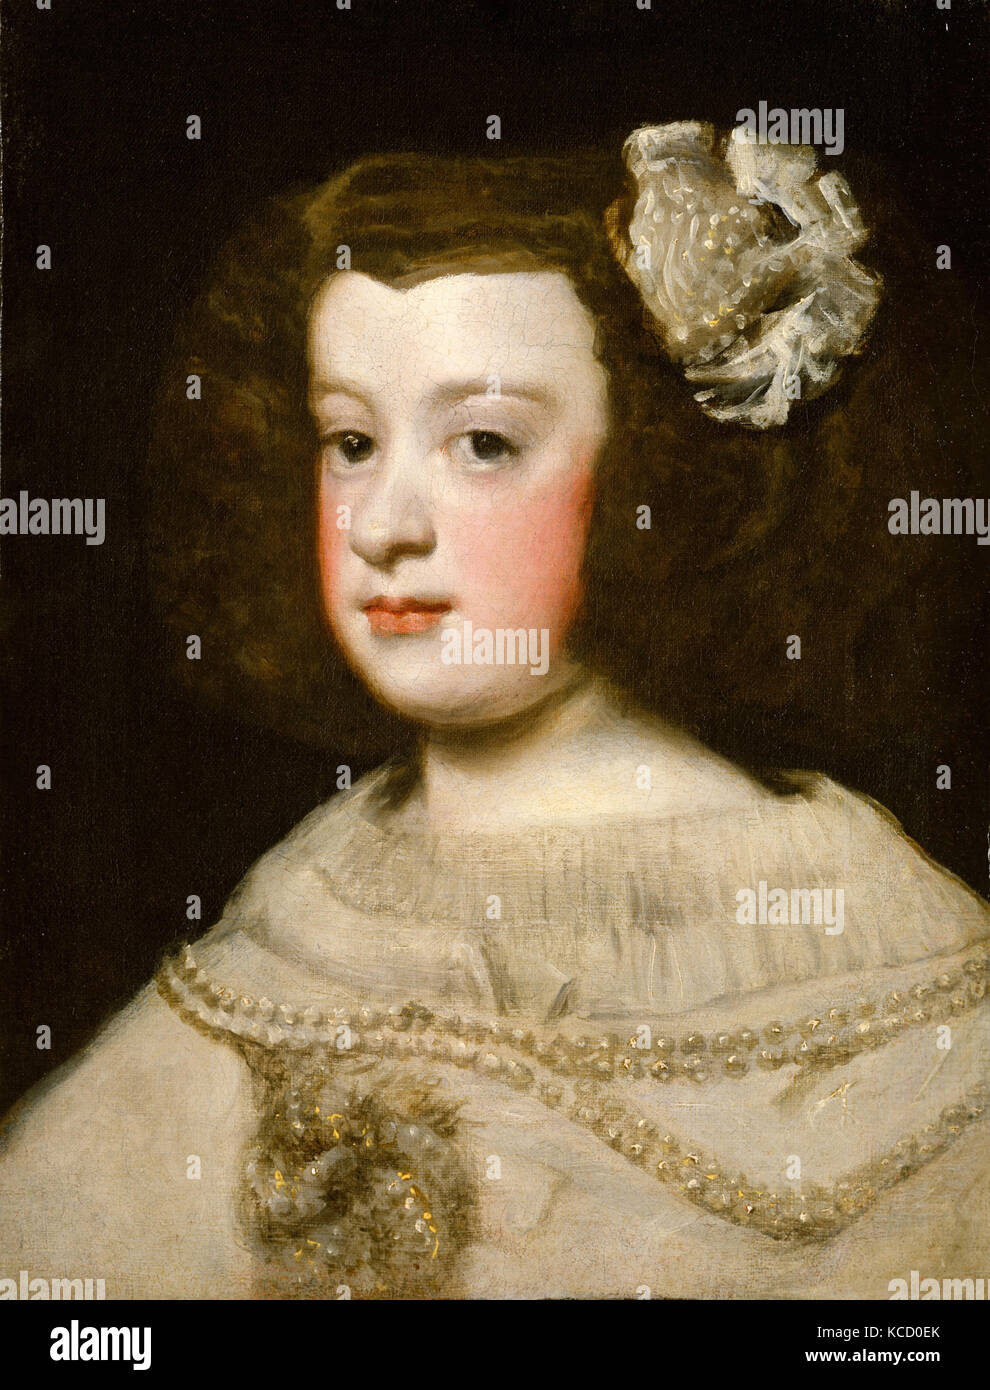 María Teresa, Infanta of Spain, Workshop of Diego Rodríguez de Silva y Velázquez, mid-17th century Stock Photo